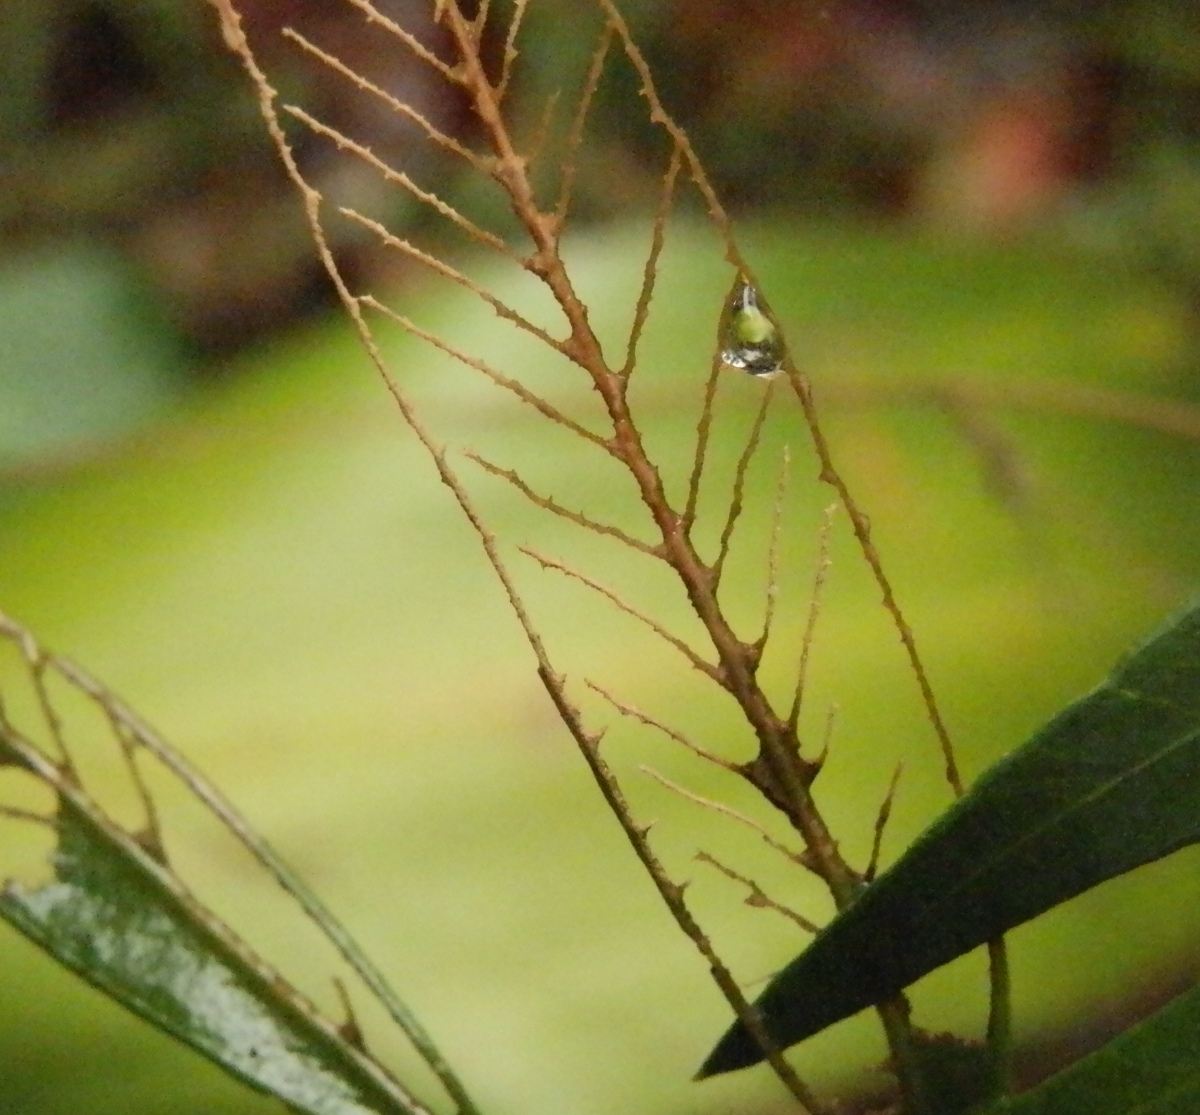 skeletonised melaleuca leaf